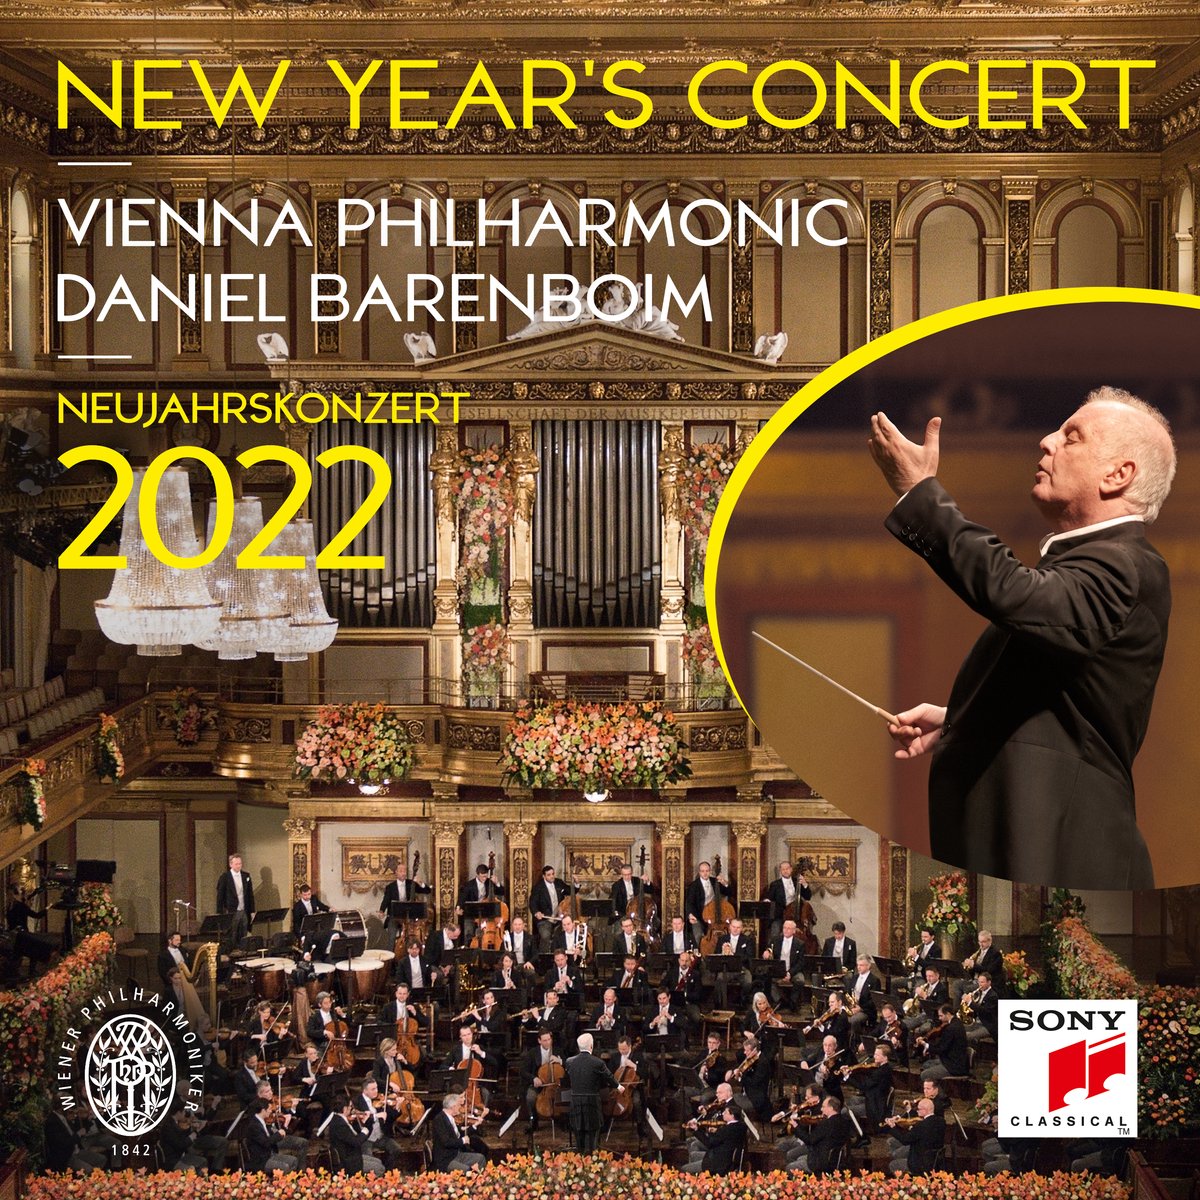 Neujahrskonzert 2022 / New Year's Concert 2022 / Concert du Nouvel An